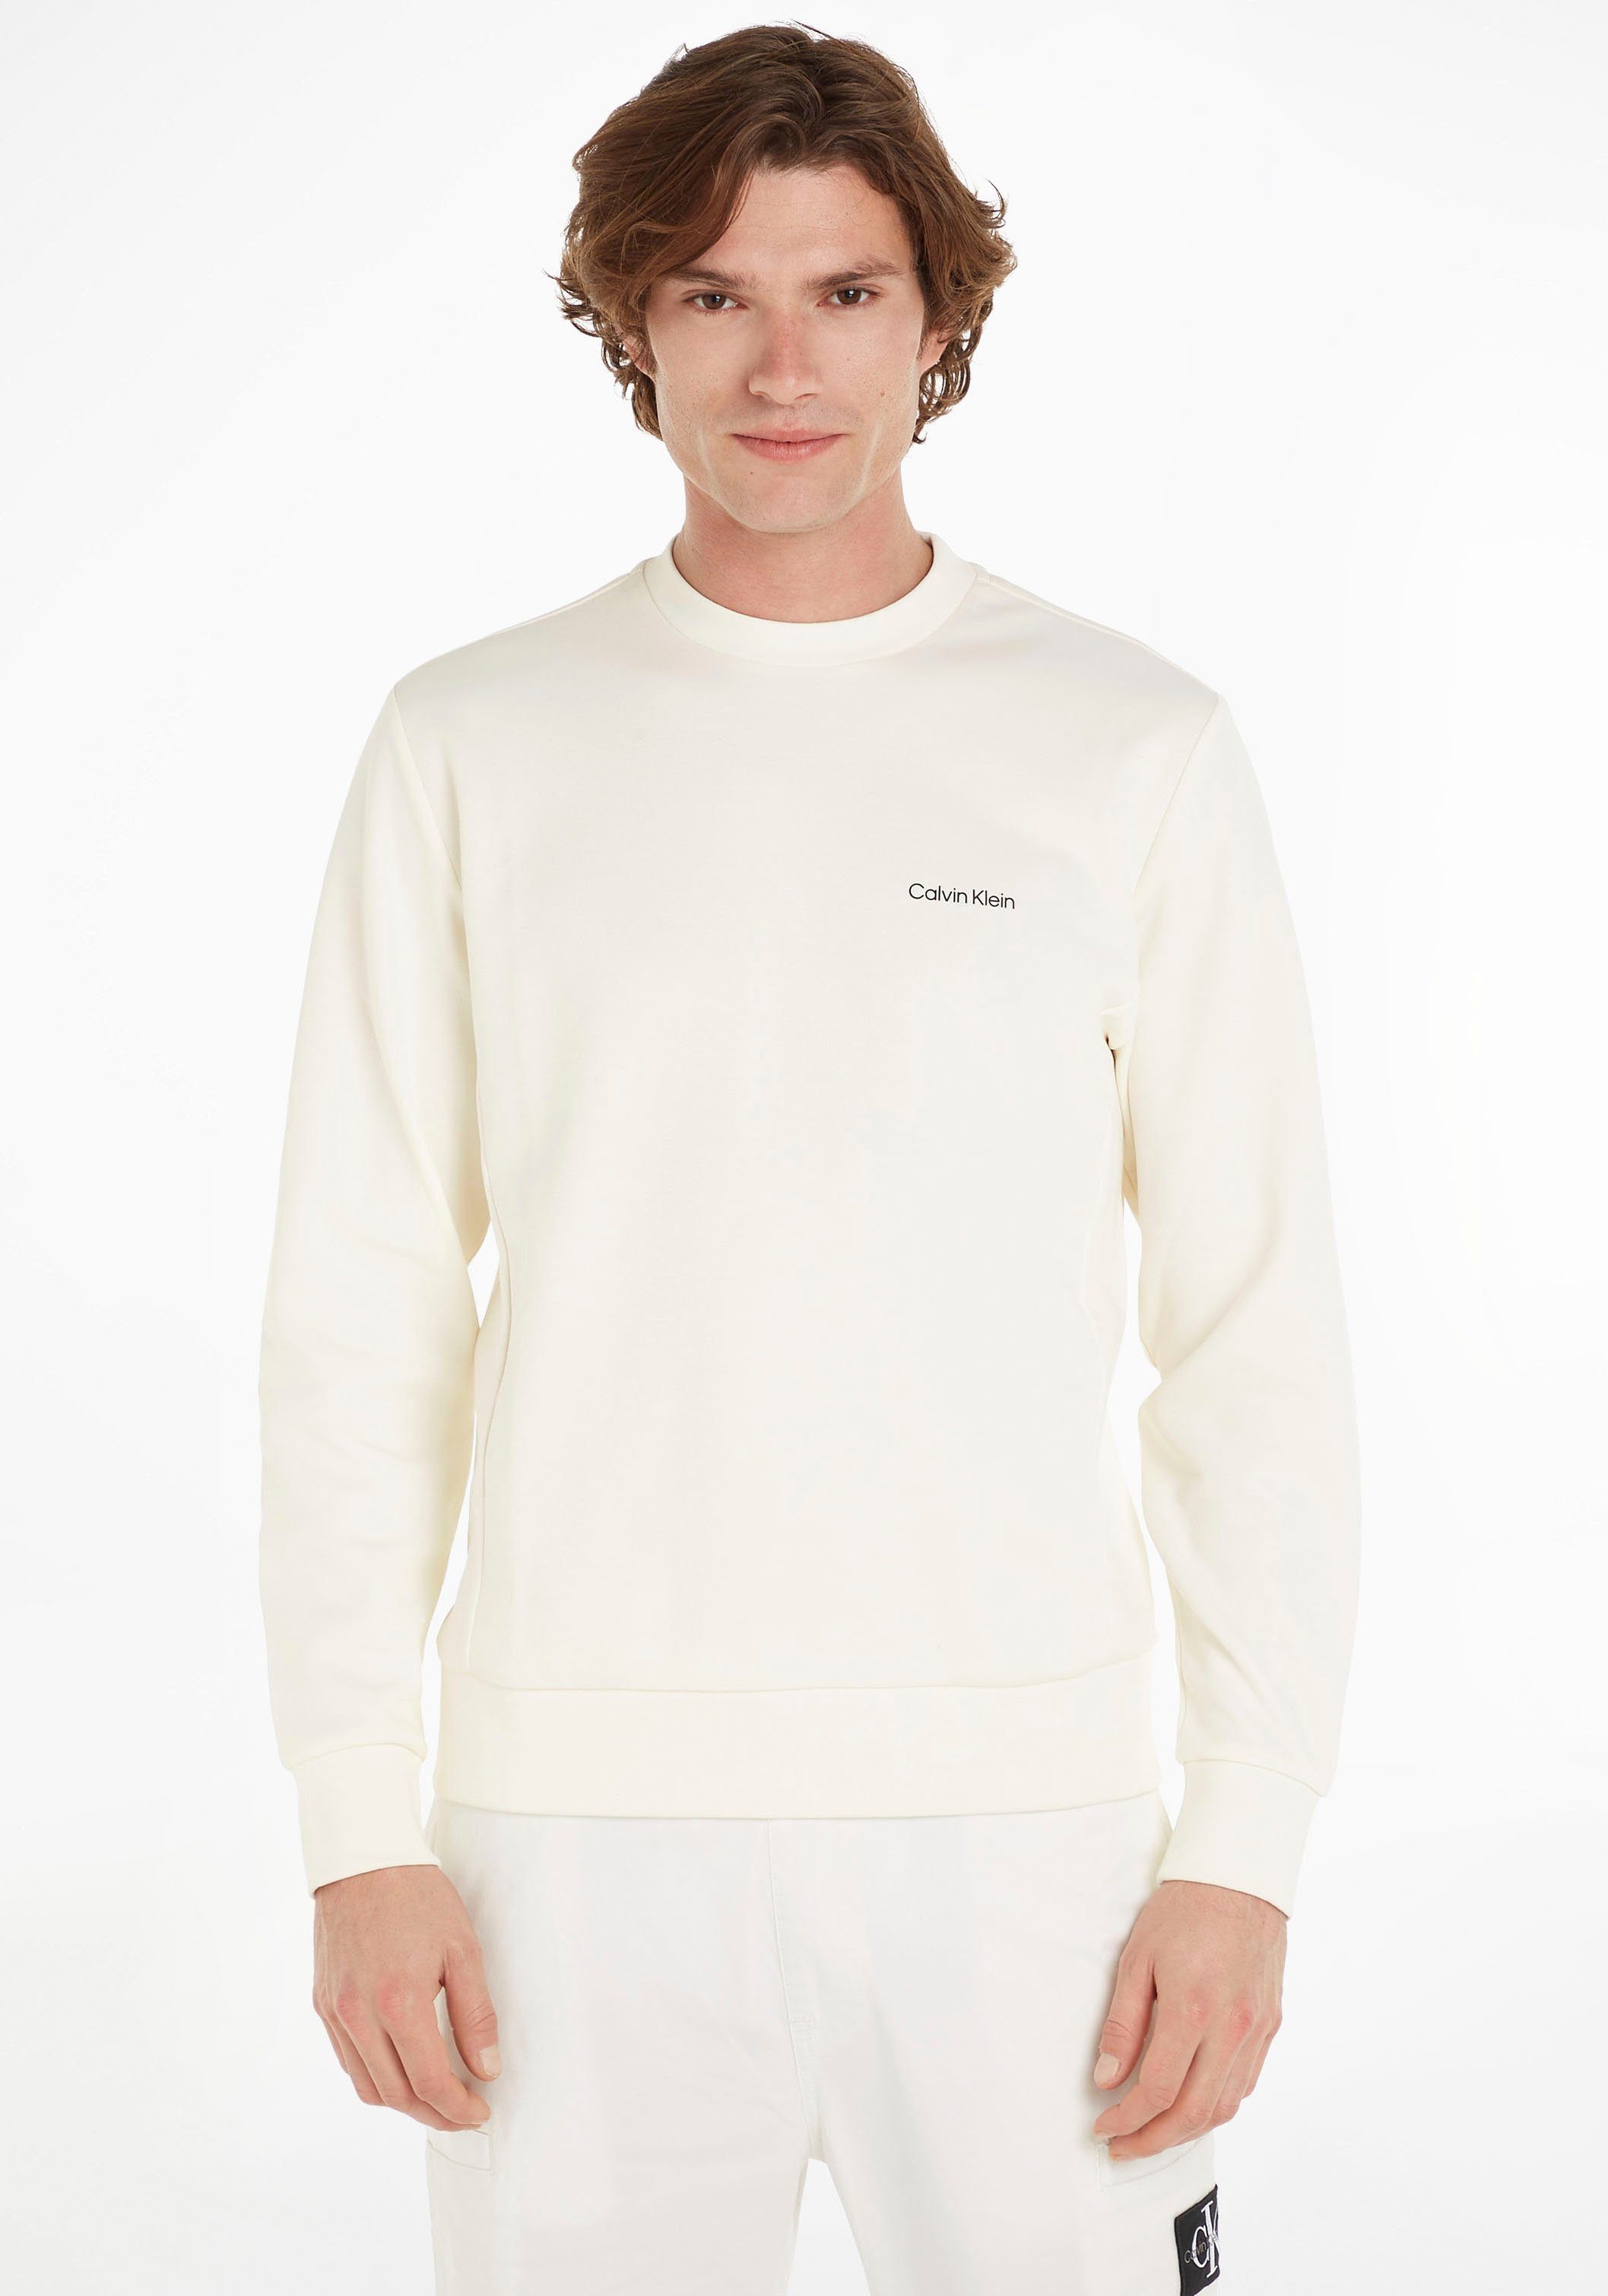 SWEATSHIRT halsnahmen REPREVE Sweatshirt Rundhalsausschnitt LOGO MICRO ecru mit Calvin Klein